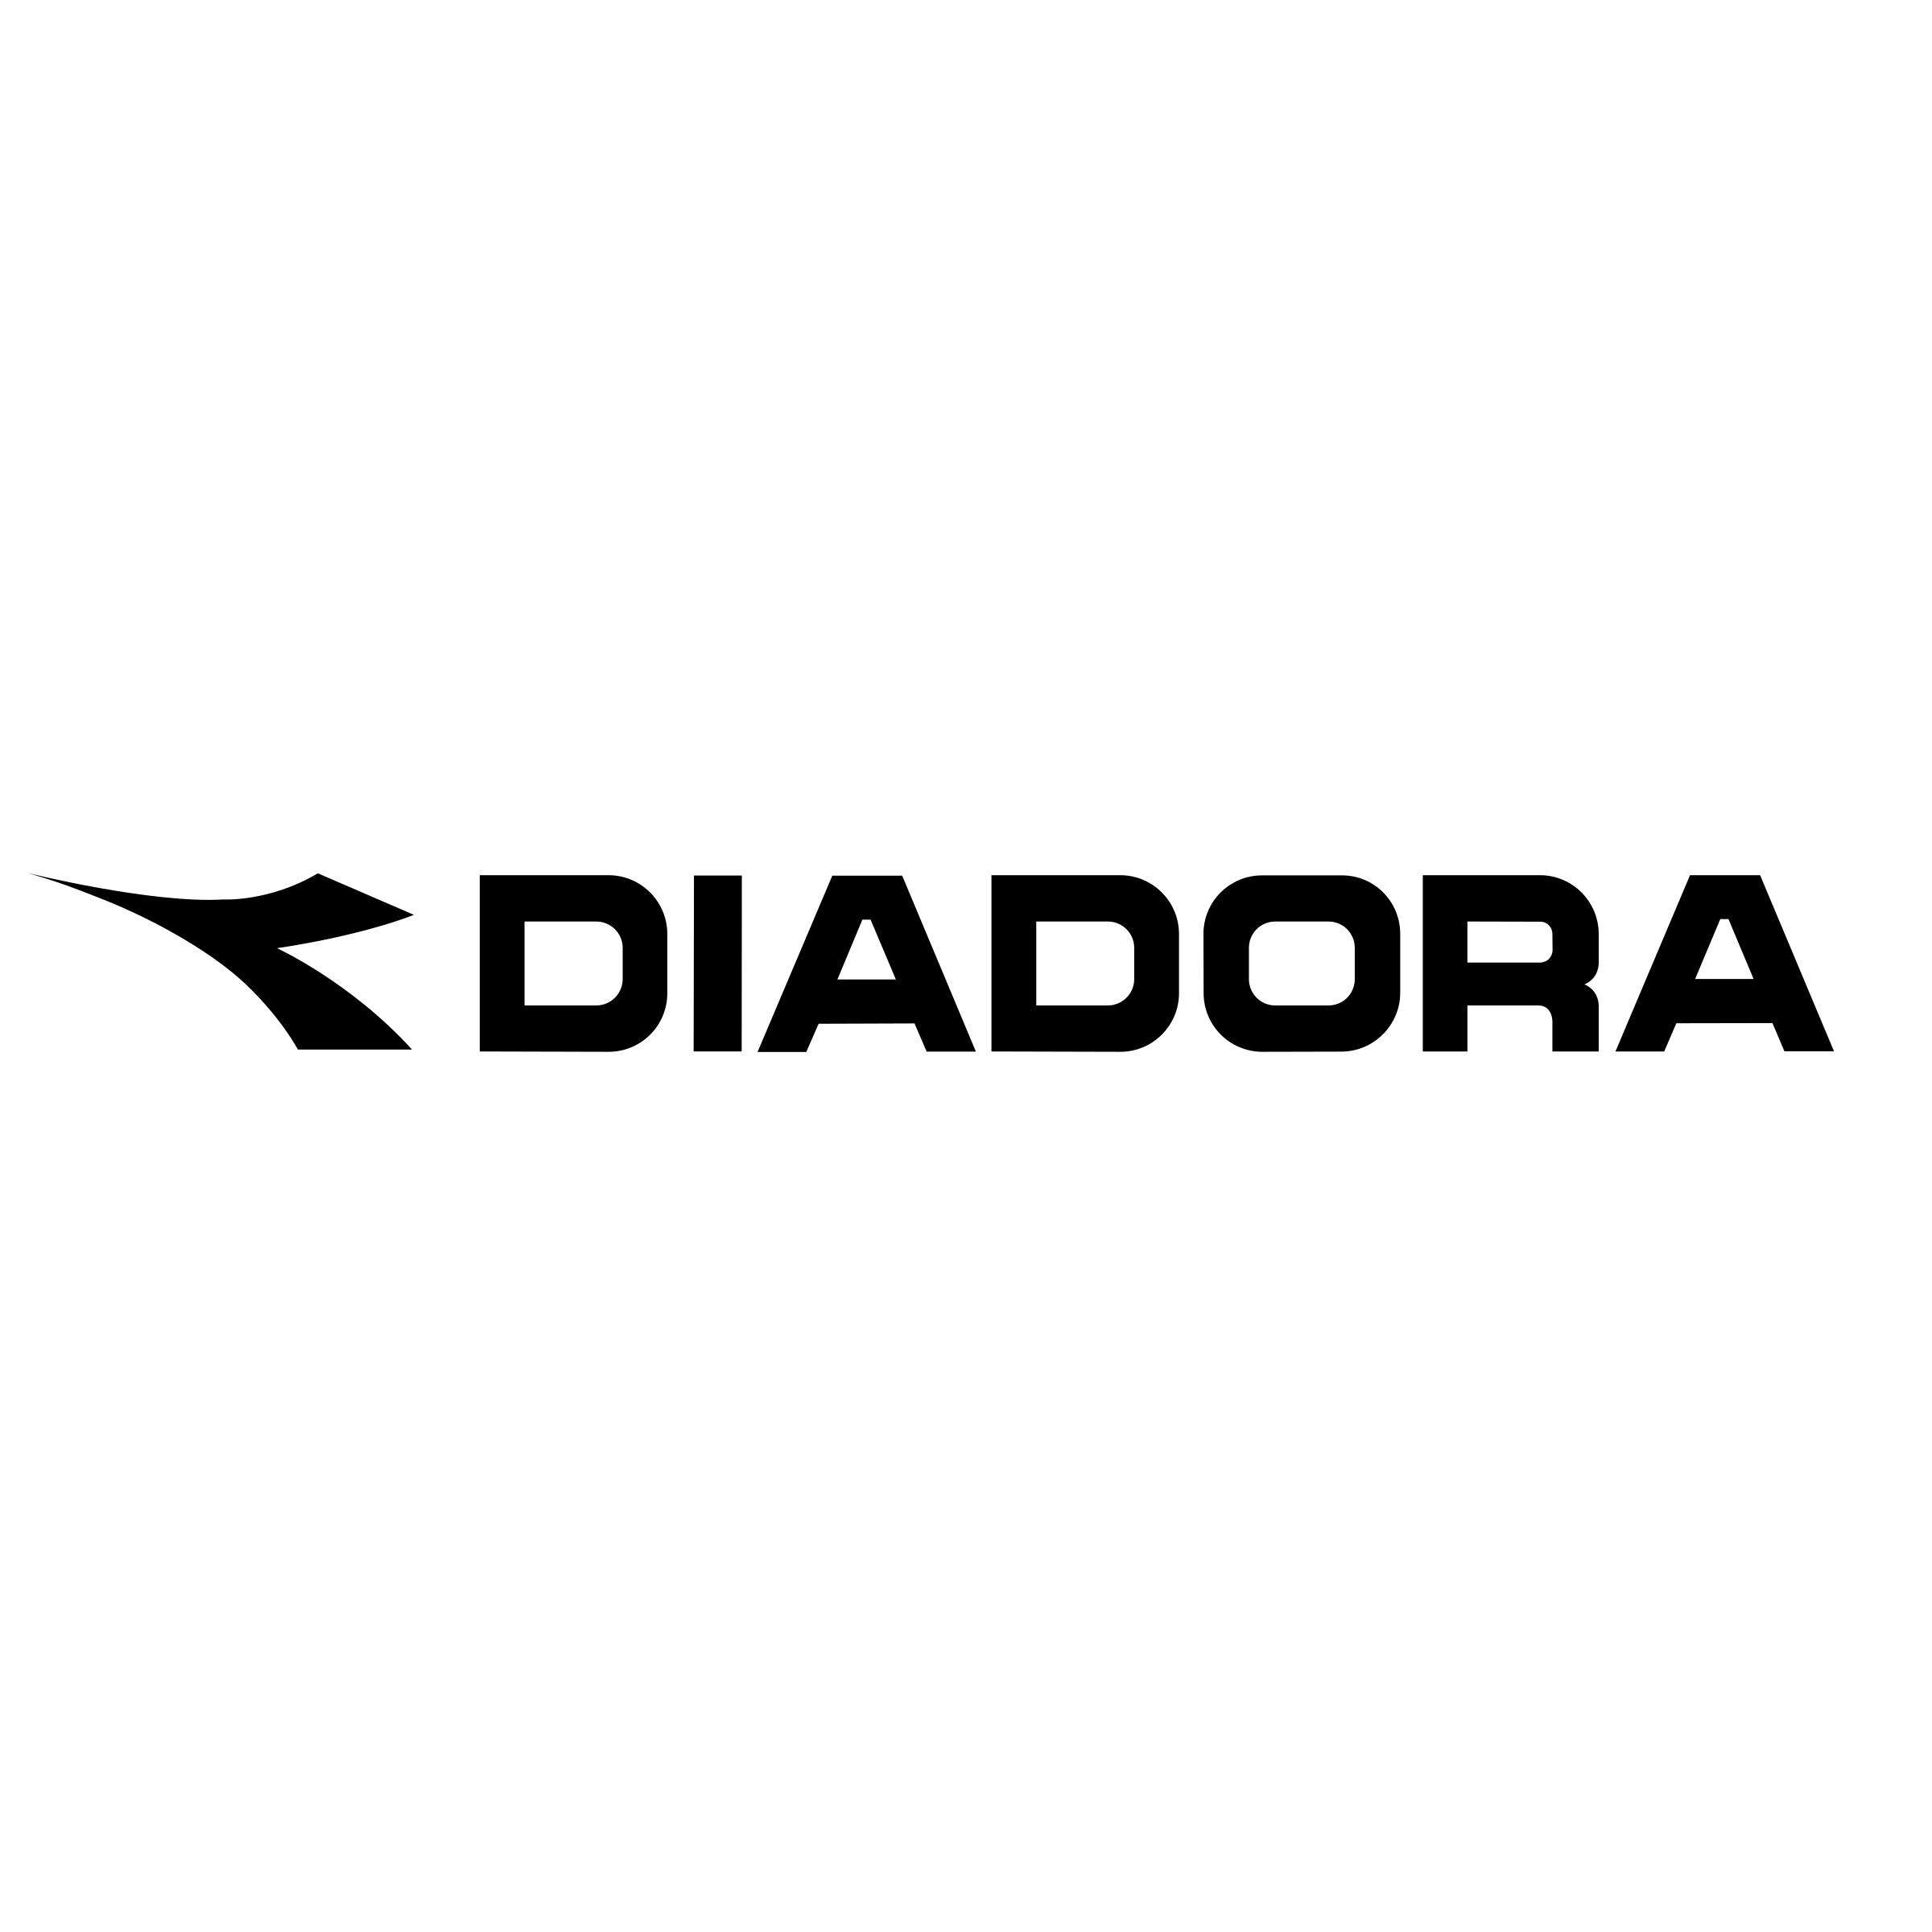 Diadora Logo - Diadora Logo PNG Transparent & SVG Vector - Freebie Supply